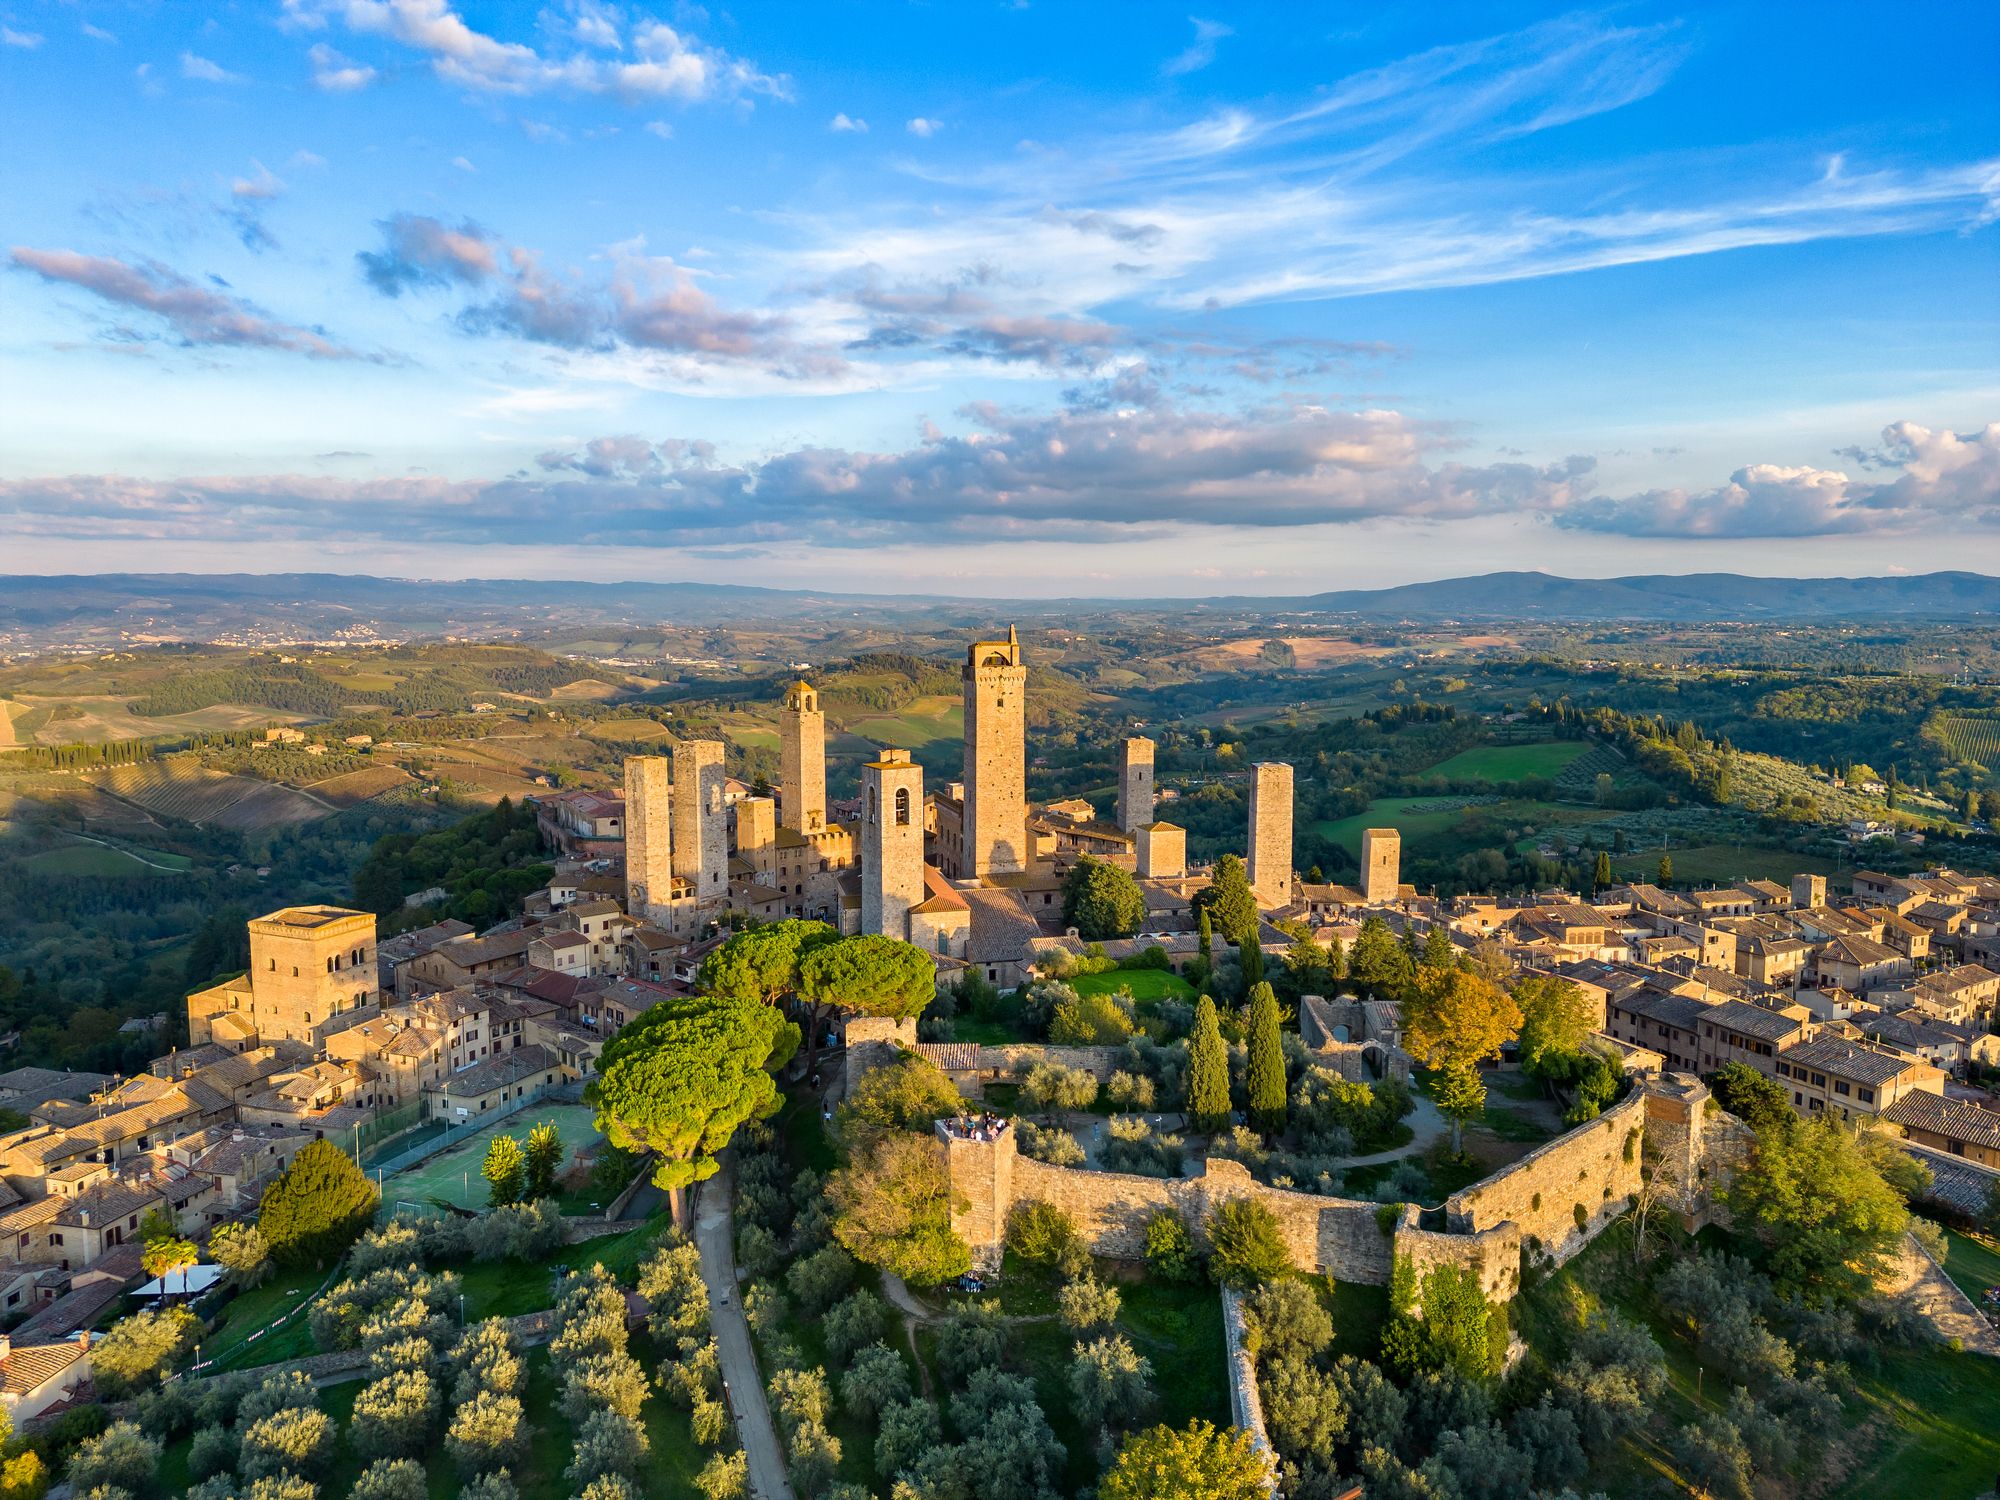 Las torres de San Gimignano dominan el horizonte de esta ciudad medieval